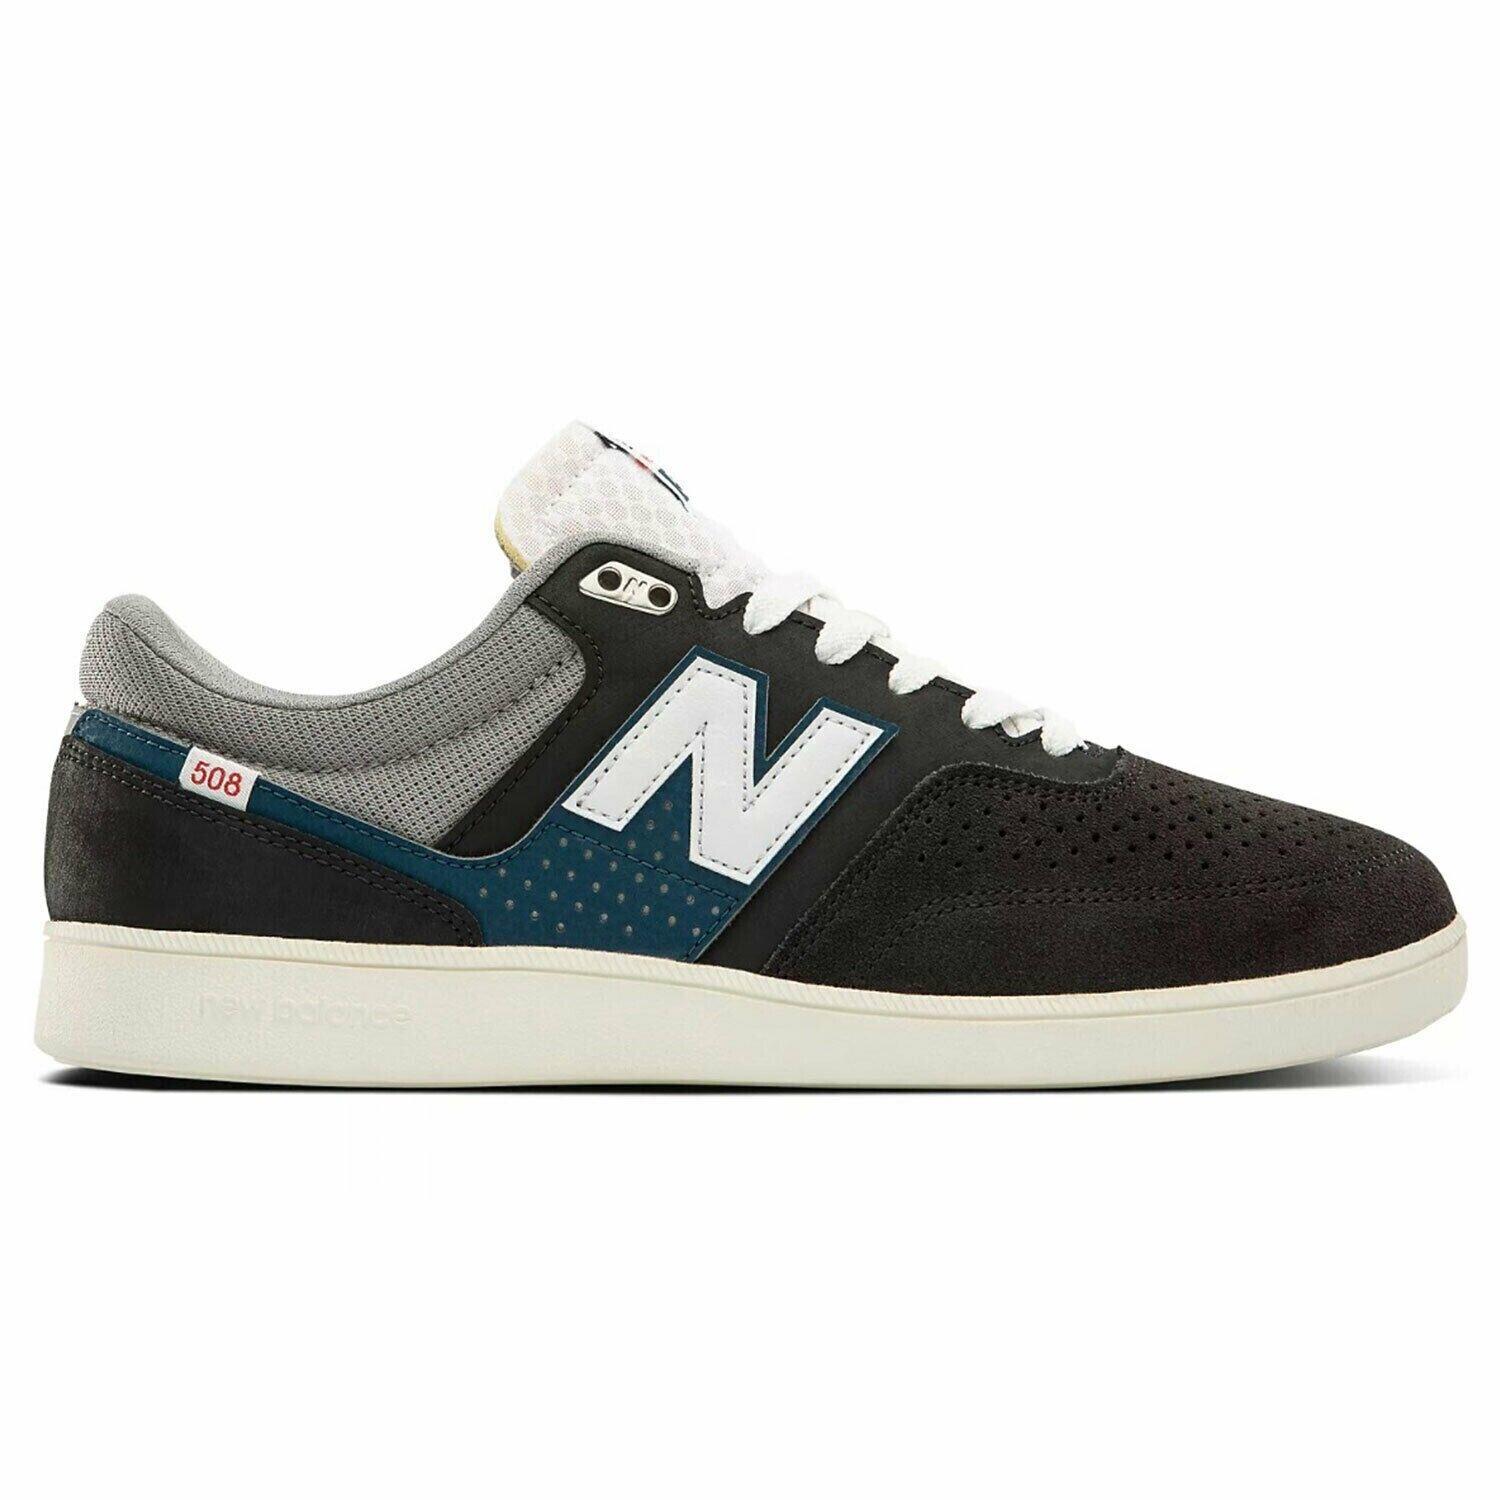 Balance Numeric 508 Westgate Navy/white Men`s Skate Shoes Size 10 D